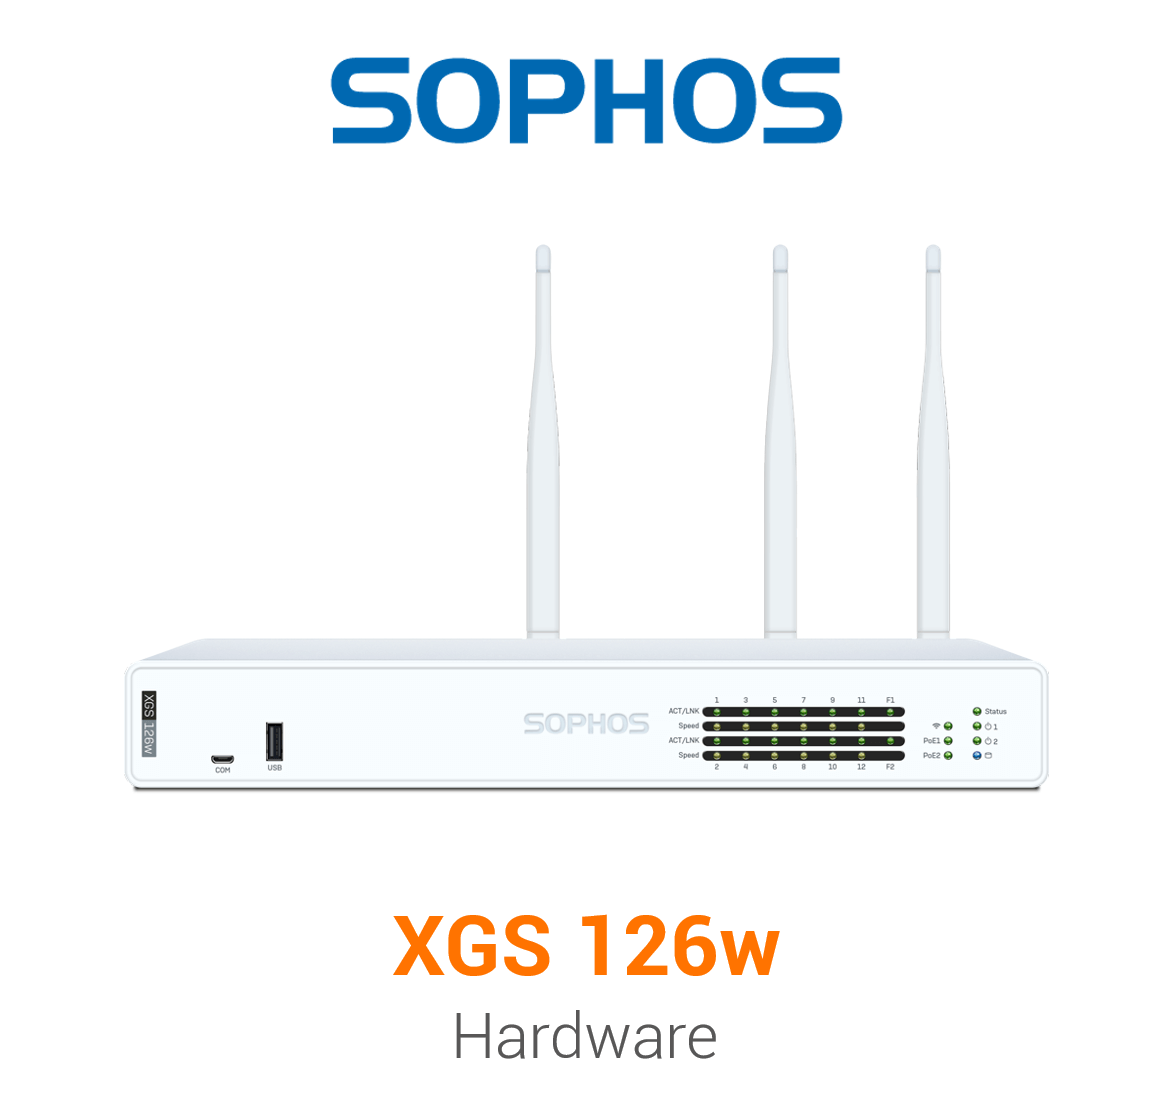 Sophos XGS 126w Security Appliance